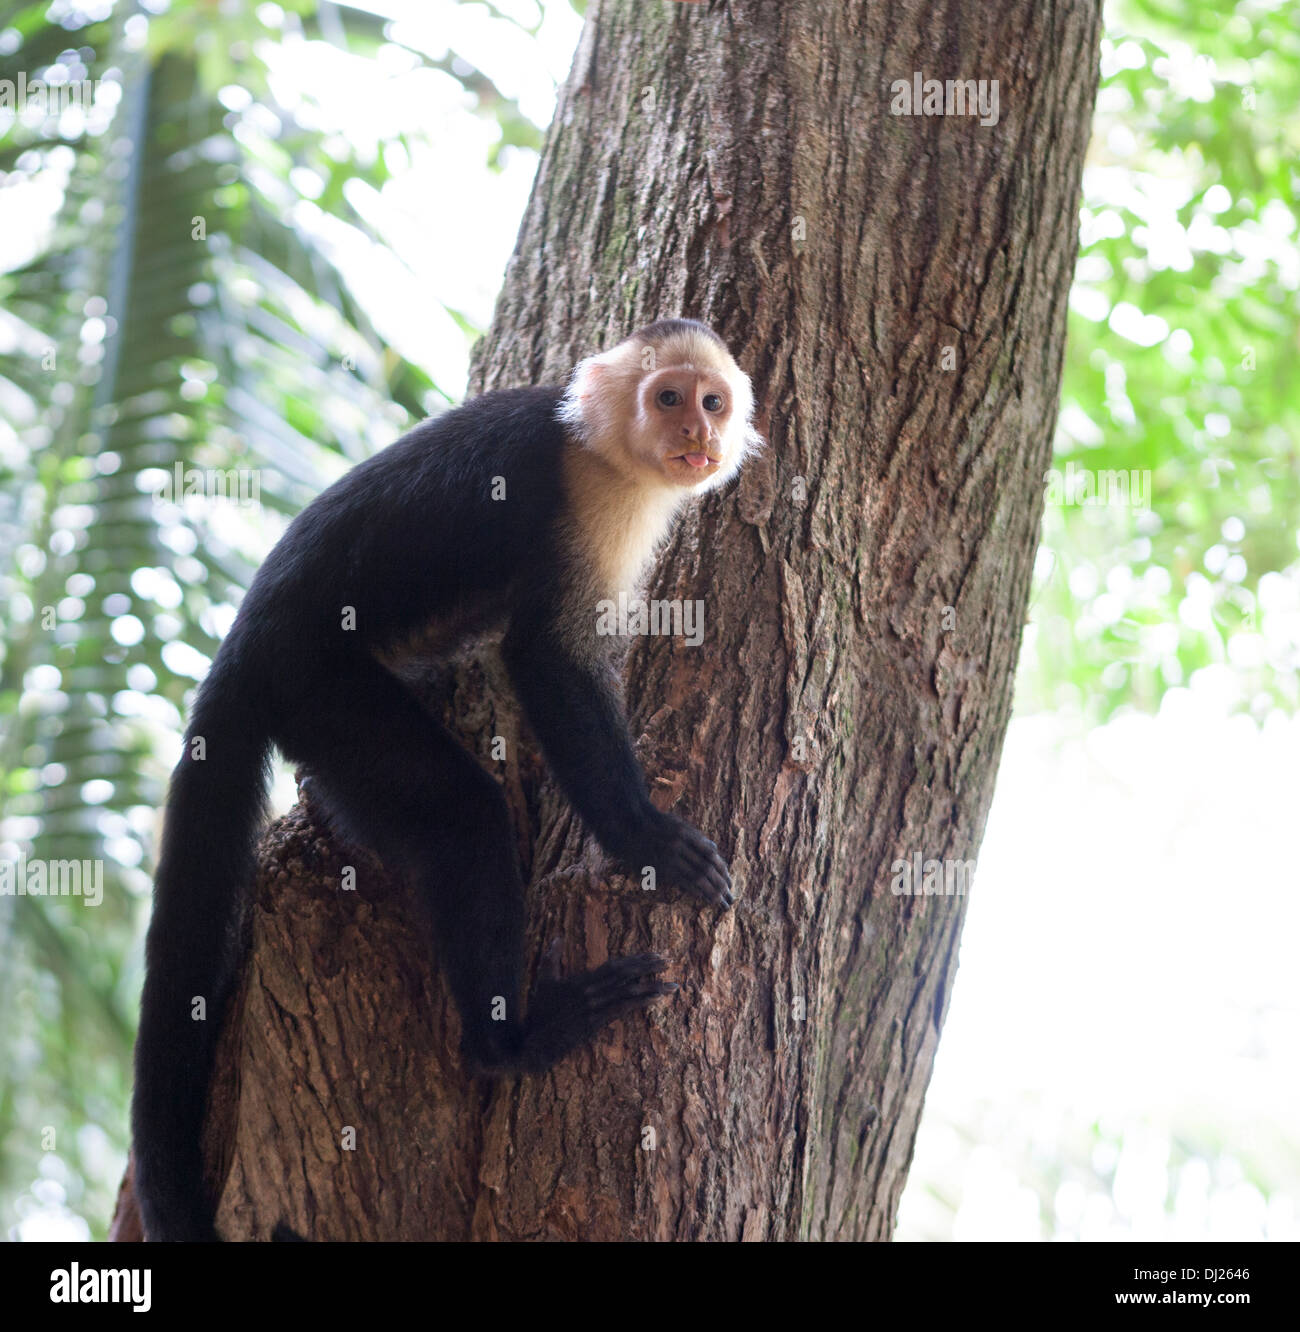 Singe-Écureuil d'Amérique centrale sur un arbre au Costa Rica Banque D'Images